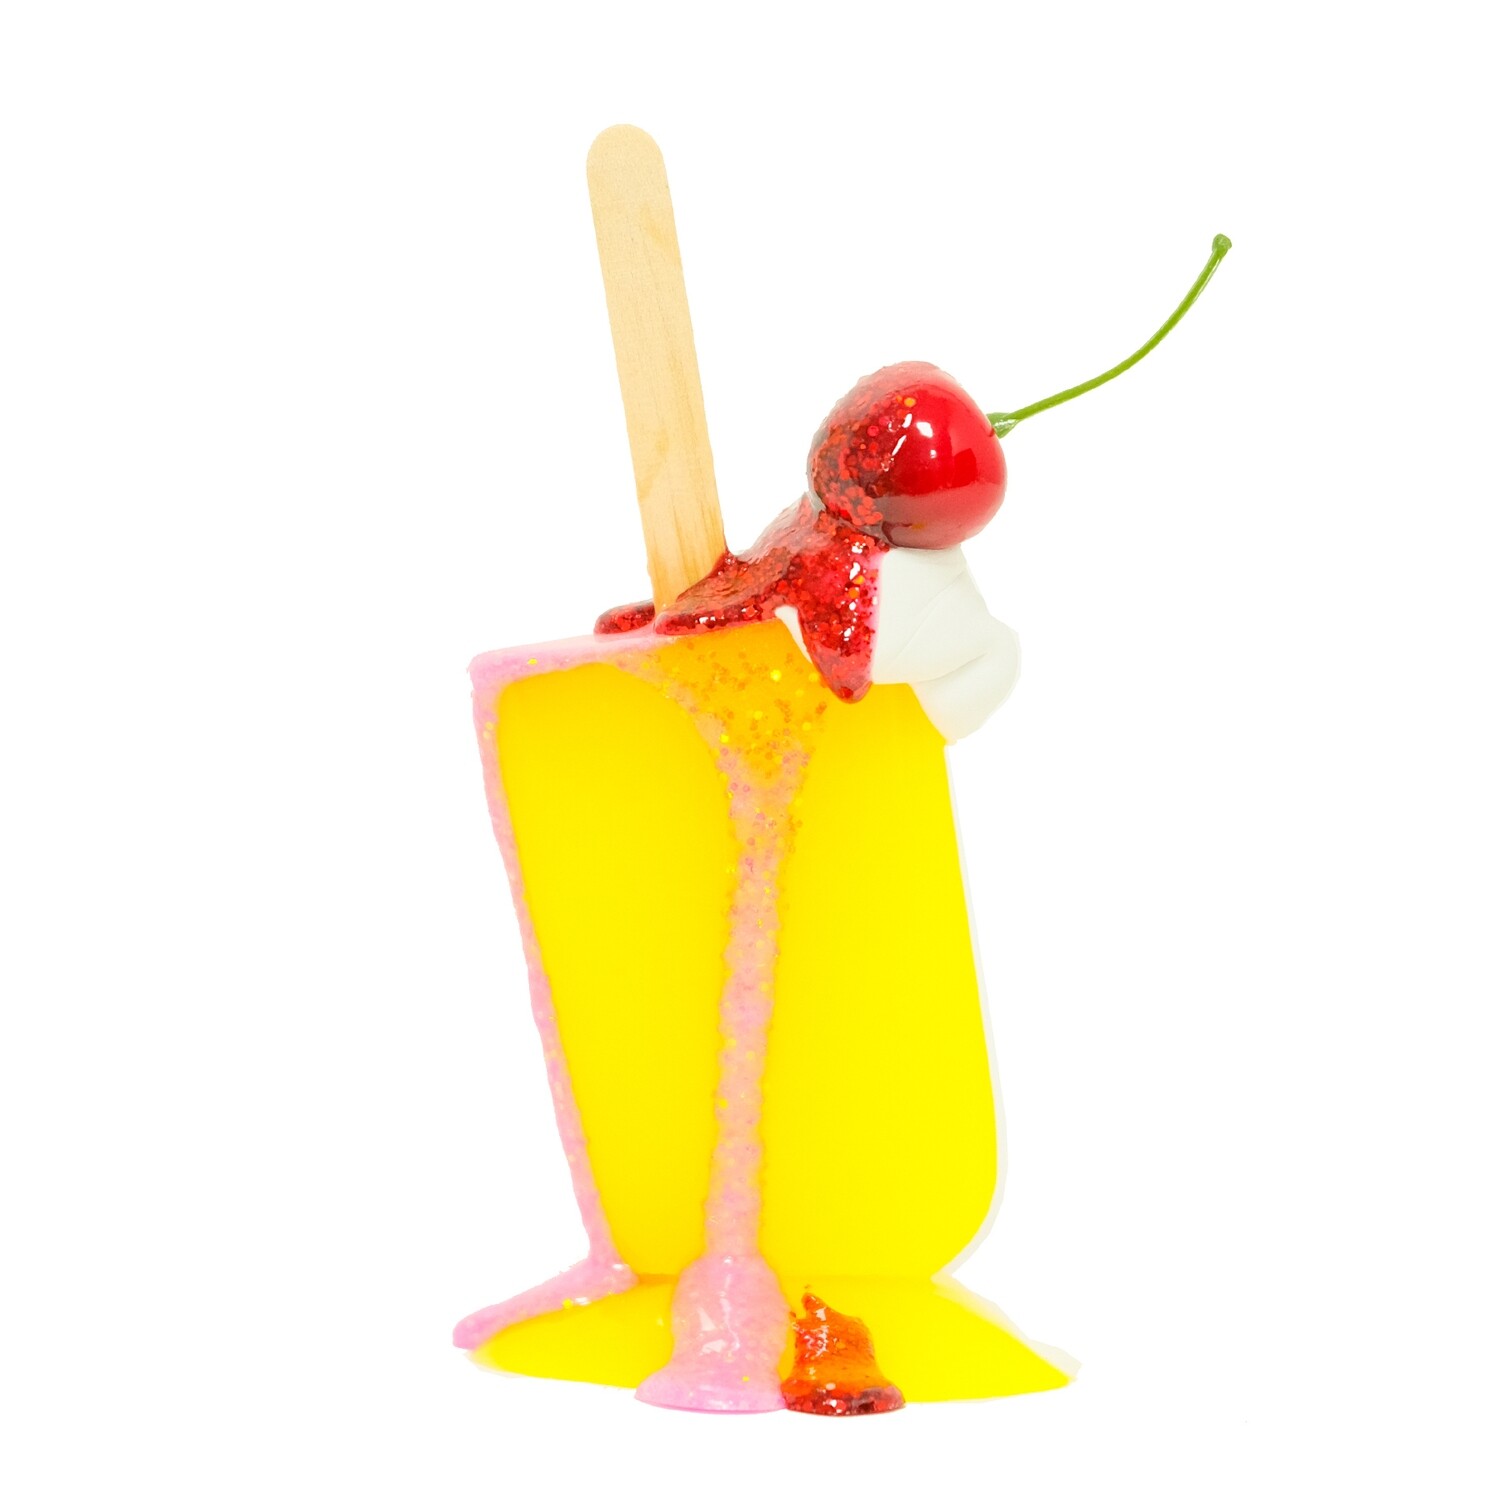 Melting Popsicle Art - 23 - Original Melting Pops